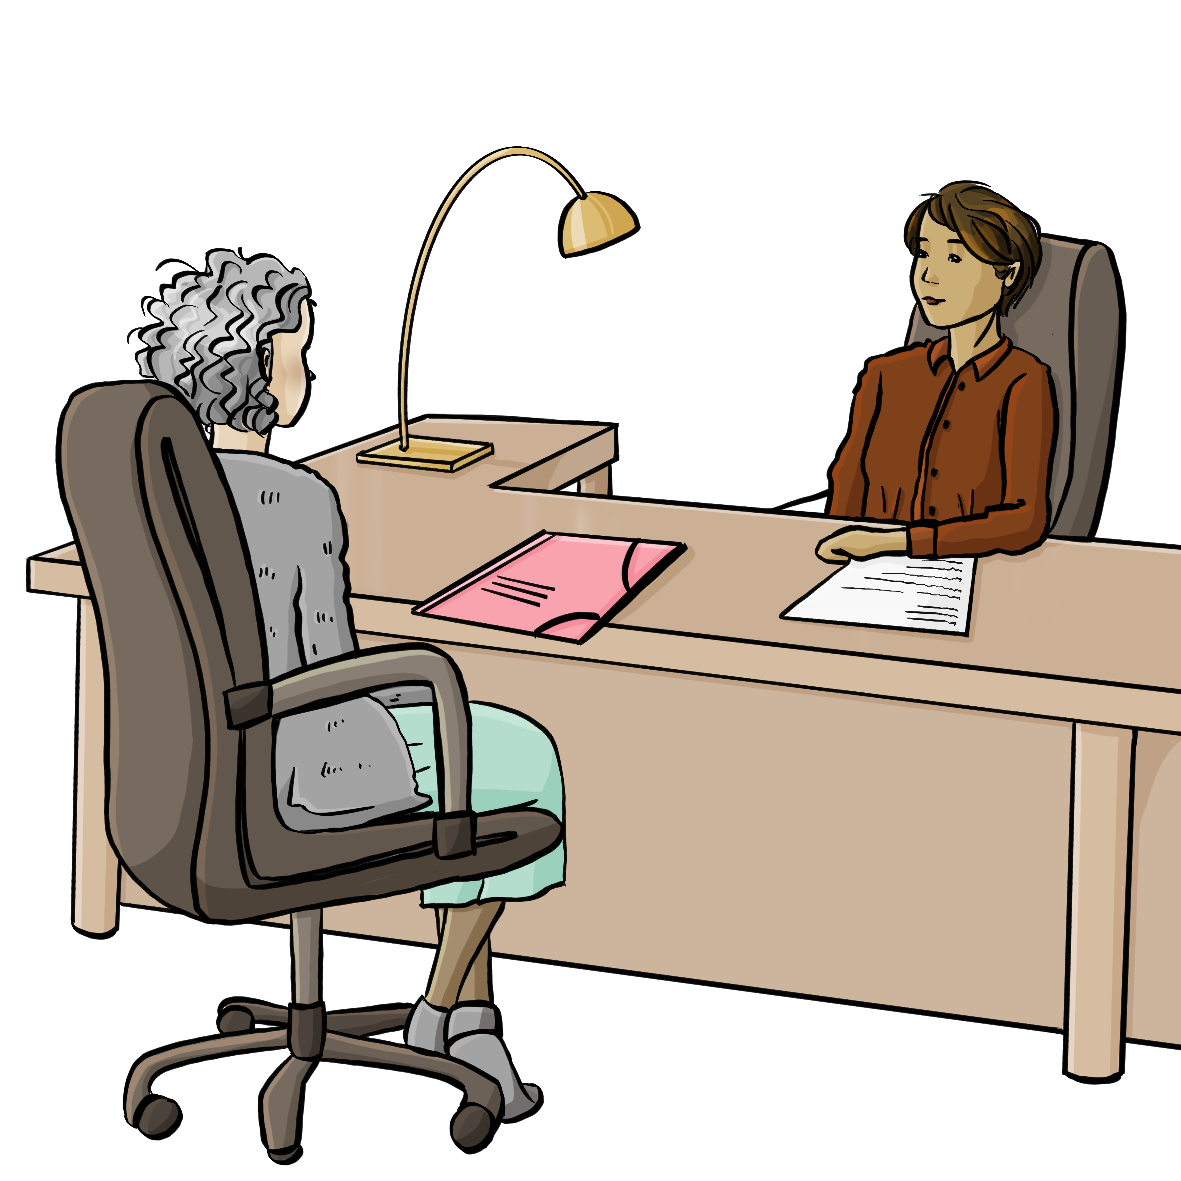 Eine Frau sitzt hinter einem Schreibtisch. Vor dem Schreibtisch sitzt eine andere Frau. Auf dem Schreibtisch ist eine Lampe, Papiere und eine Mappe. 